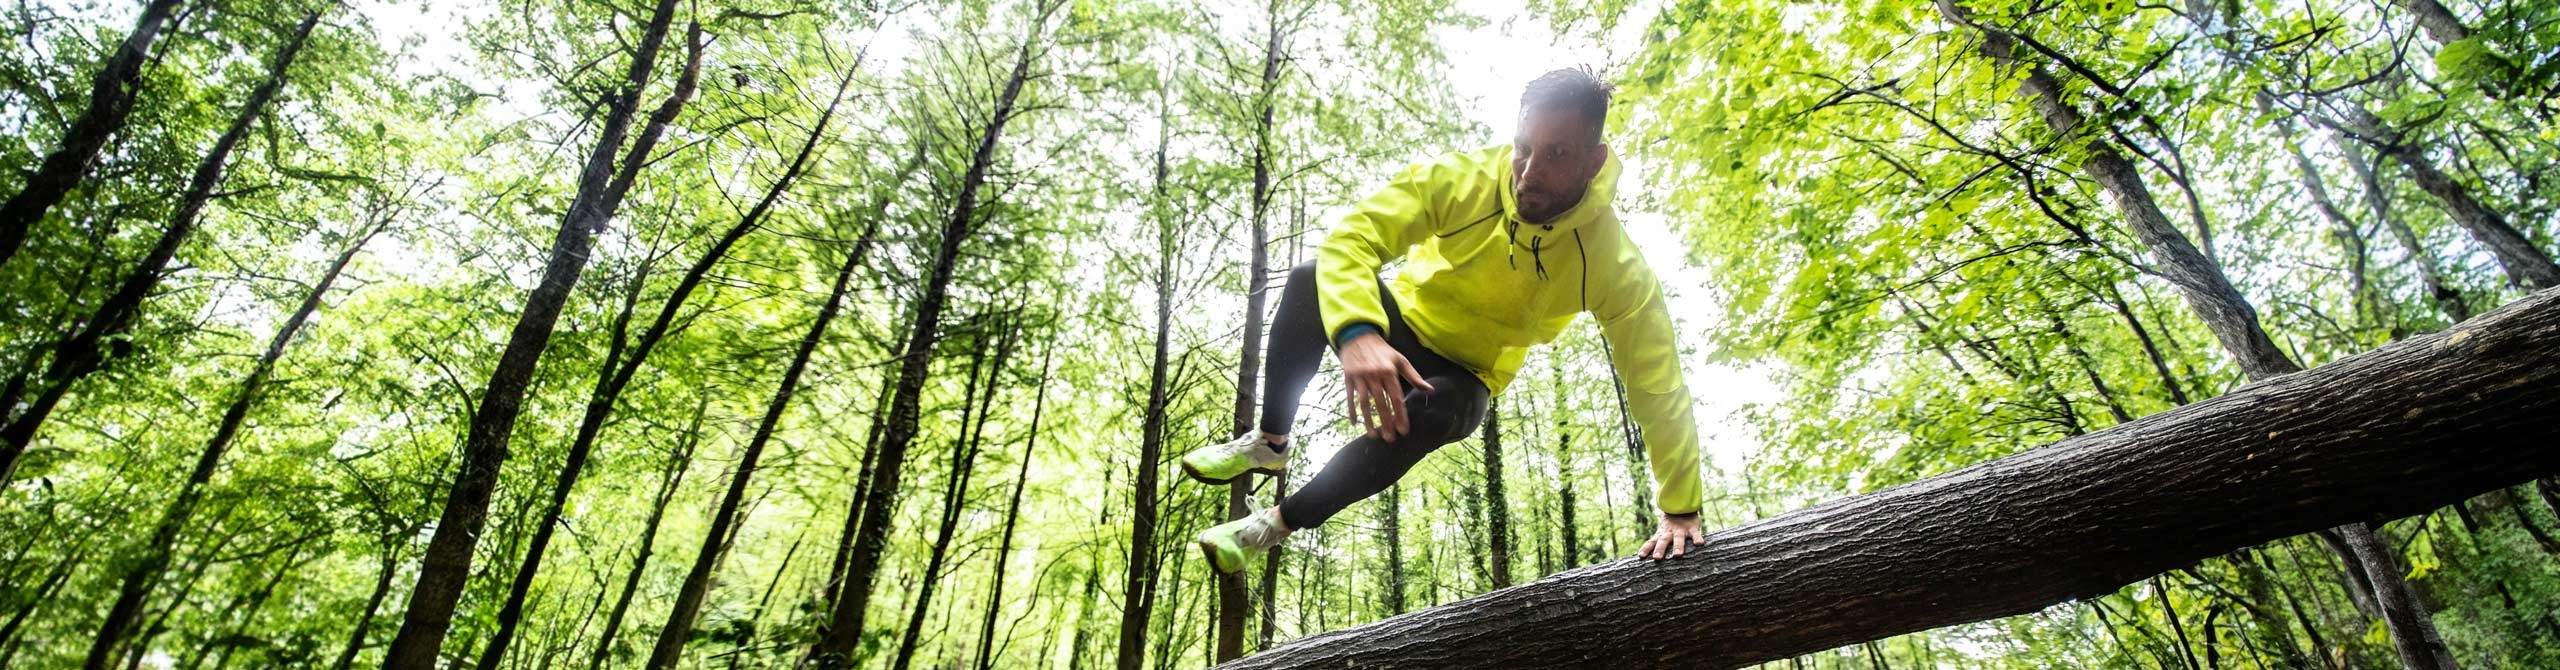 Sportler springt auf einem Waldweg über einen Baum